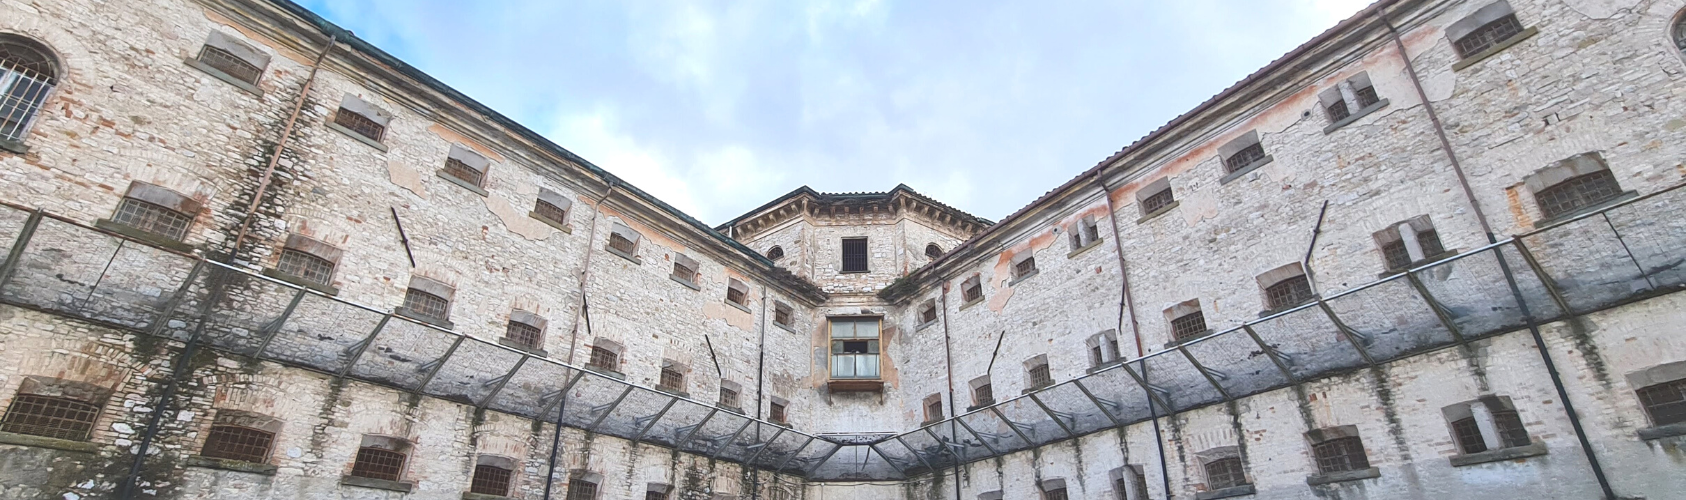 Ex carcere a Perugia